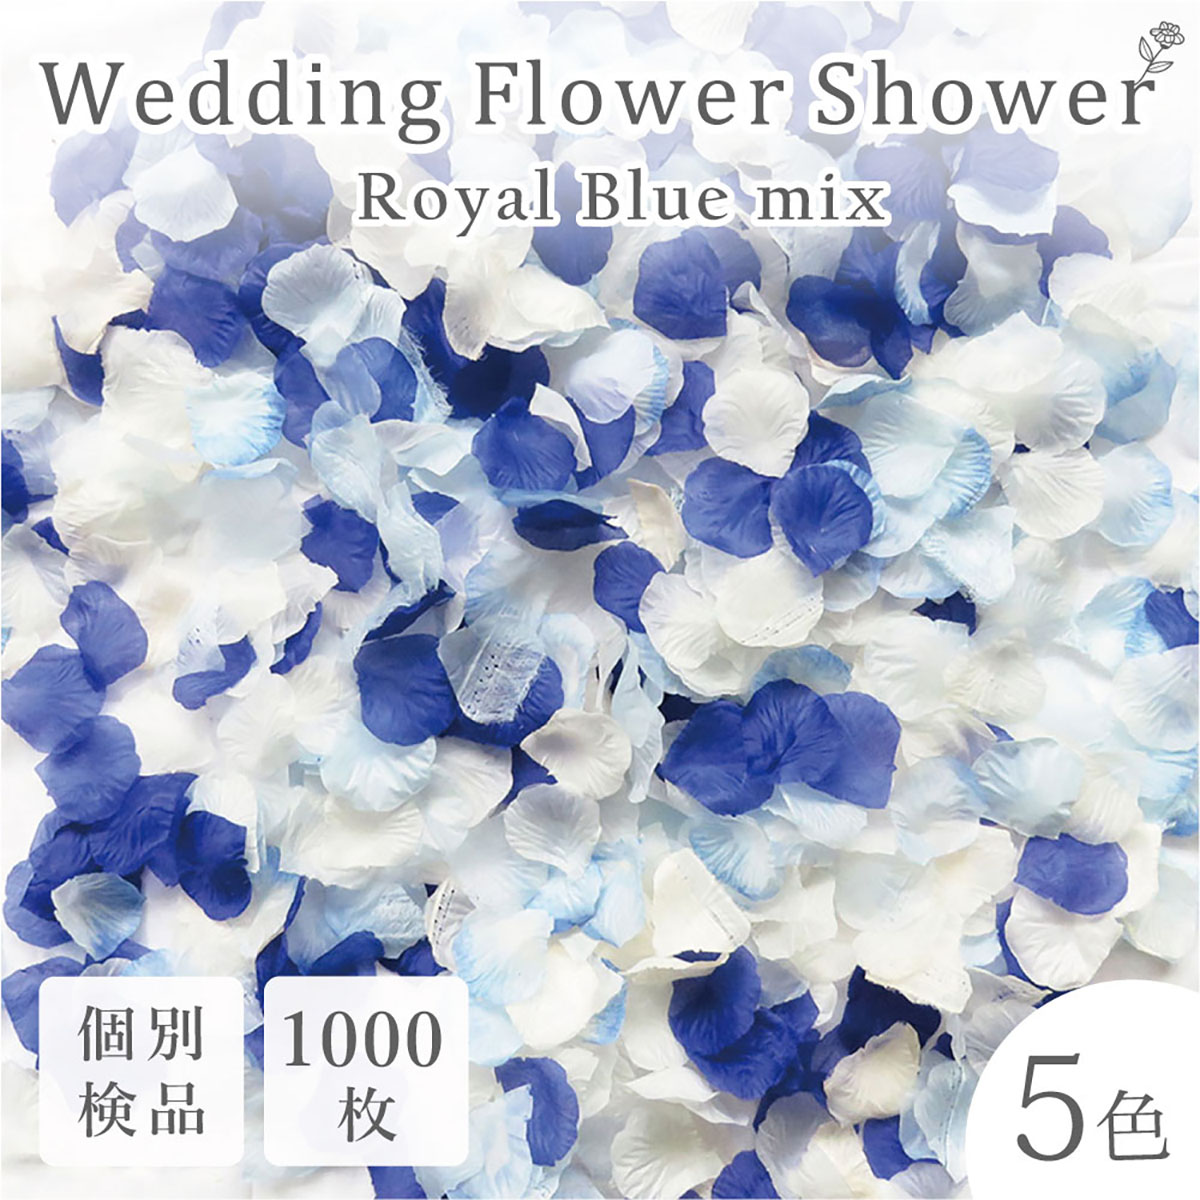 【楽天市場】フラワーシャワー 約1000枚 造花 ロイヤルブルー 5色MIX 限定 花びら 青 白 水色 結婚式 ガーデン ウェディング